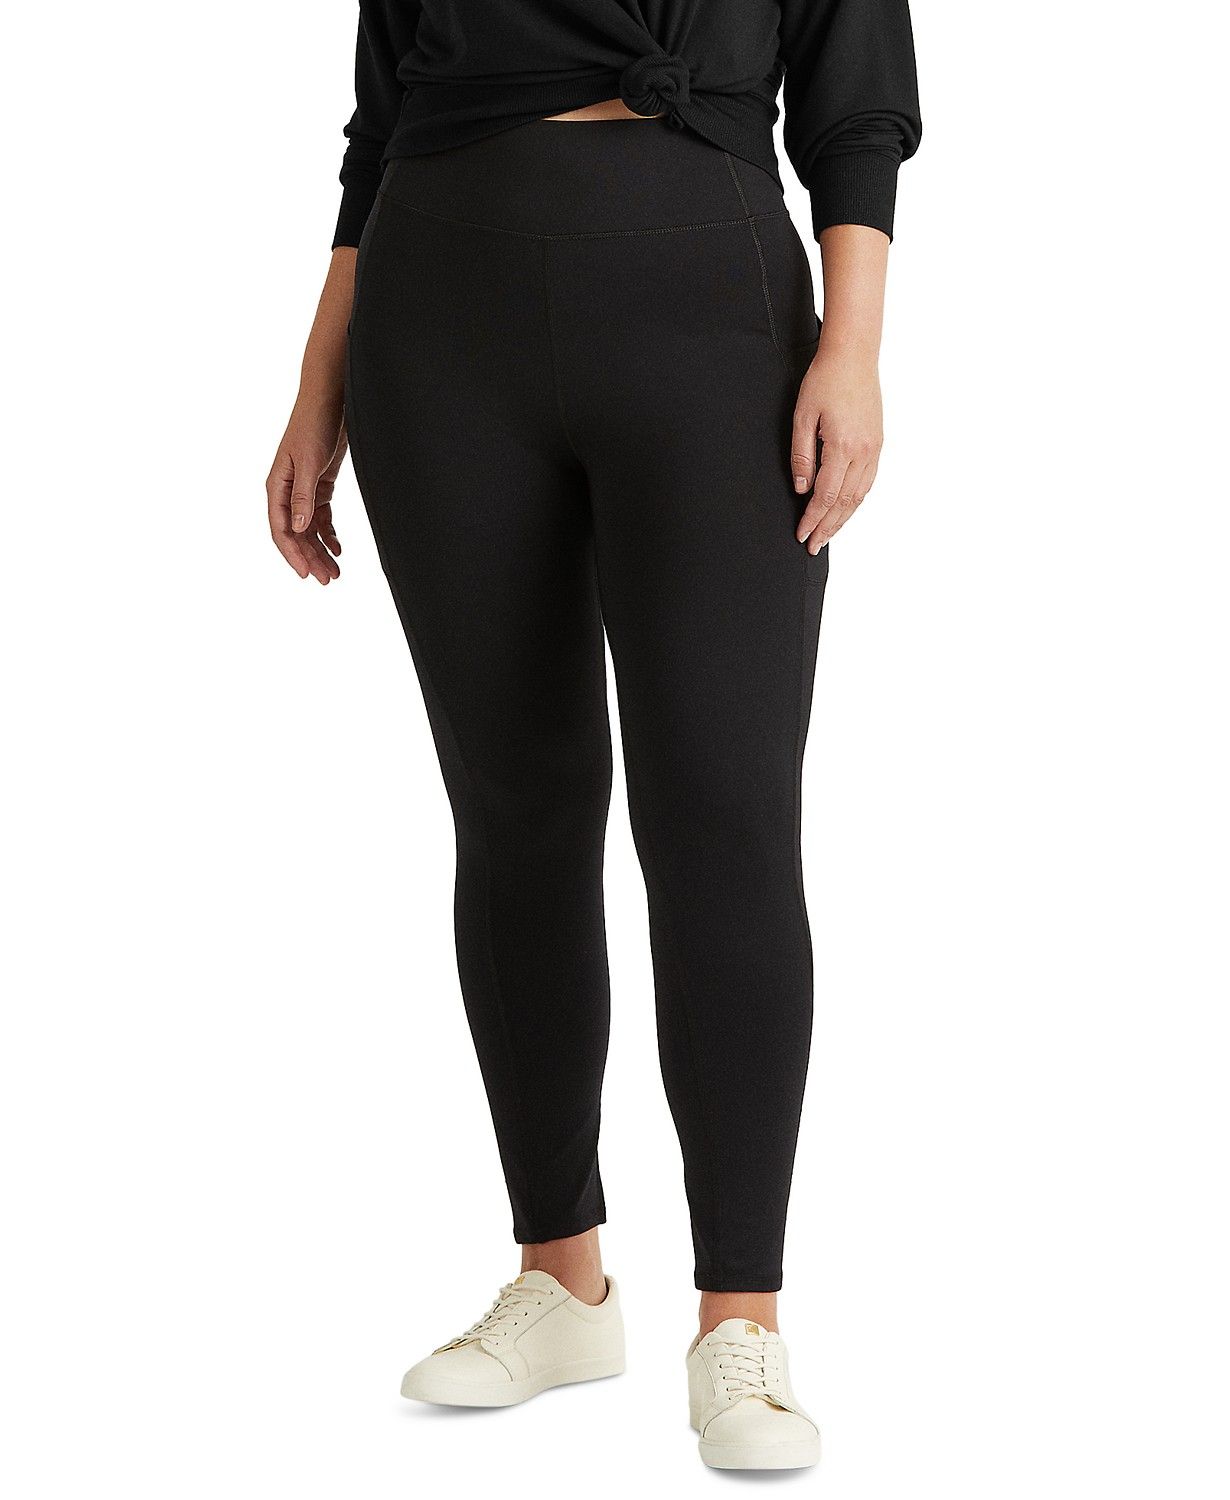 Lauren Ralph Lauren Plus-Size Stretch Jersey Legging & Reviews - Pants & Capris - Plus Sizes - Ma... | Macys (US)